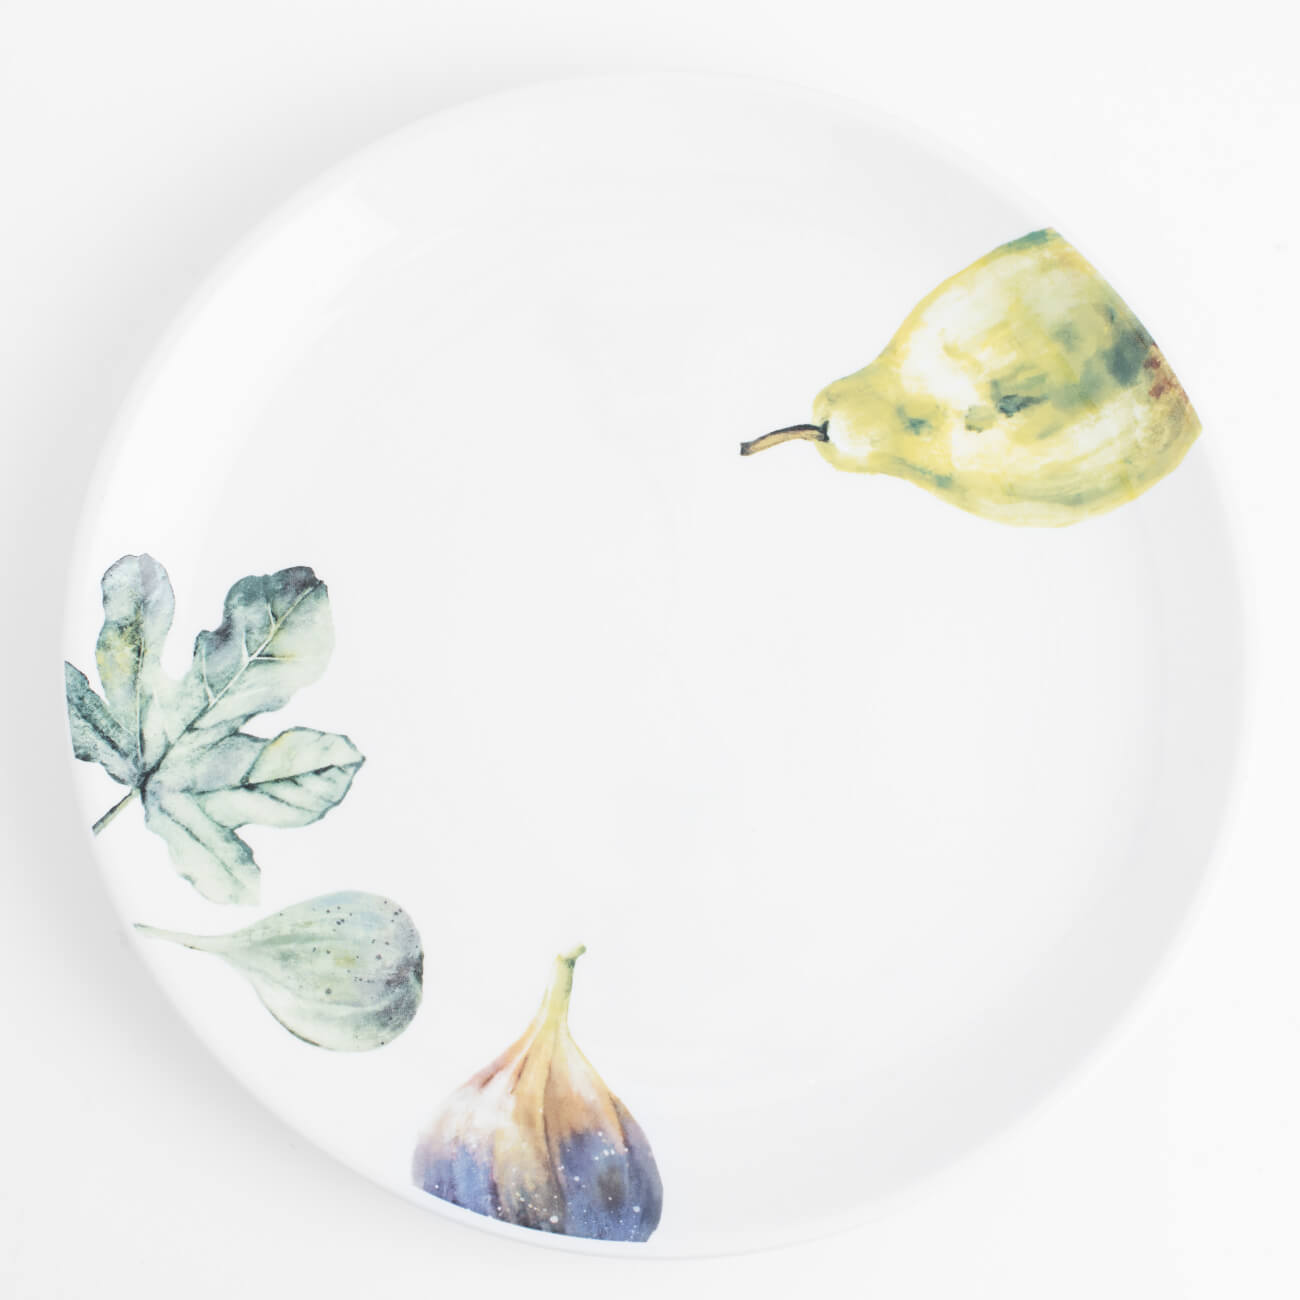 Тарелка обеденная, 26 см, керамика, белая, Инжир и груша, Fruit garden тарелка лилия